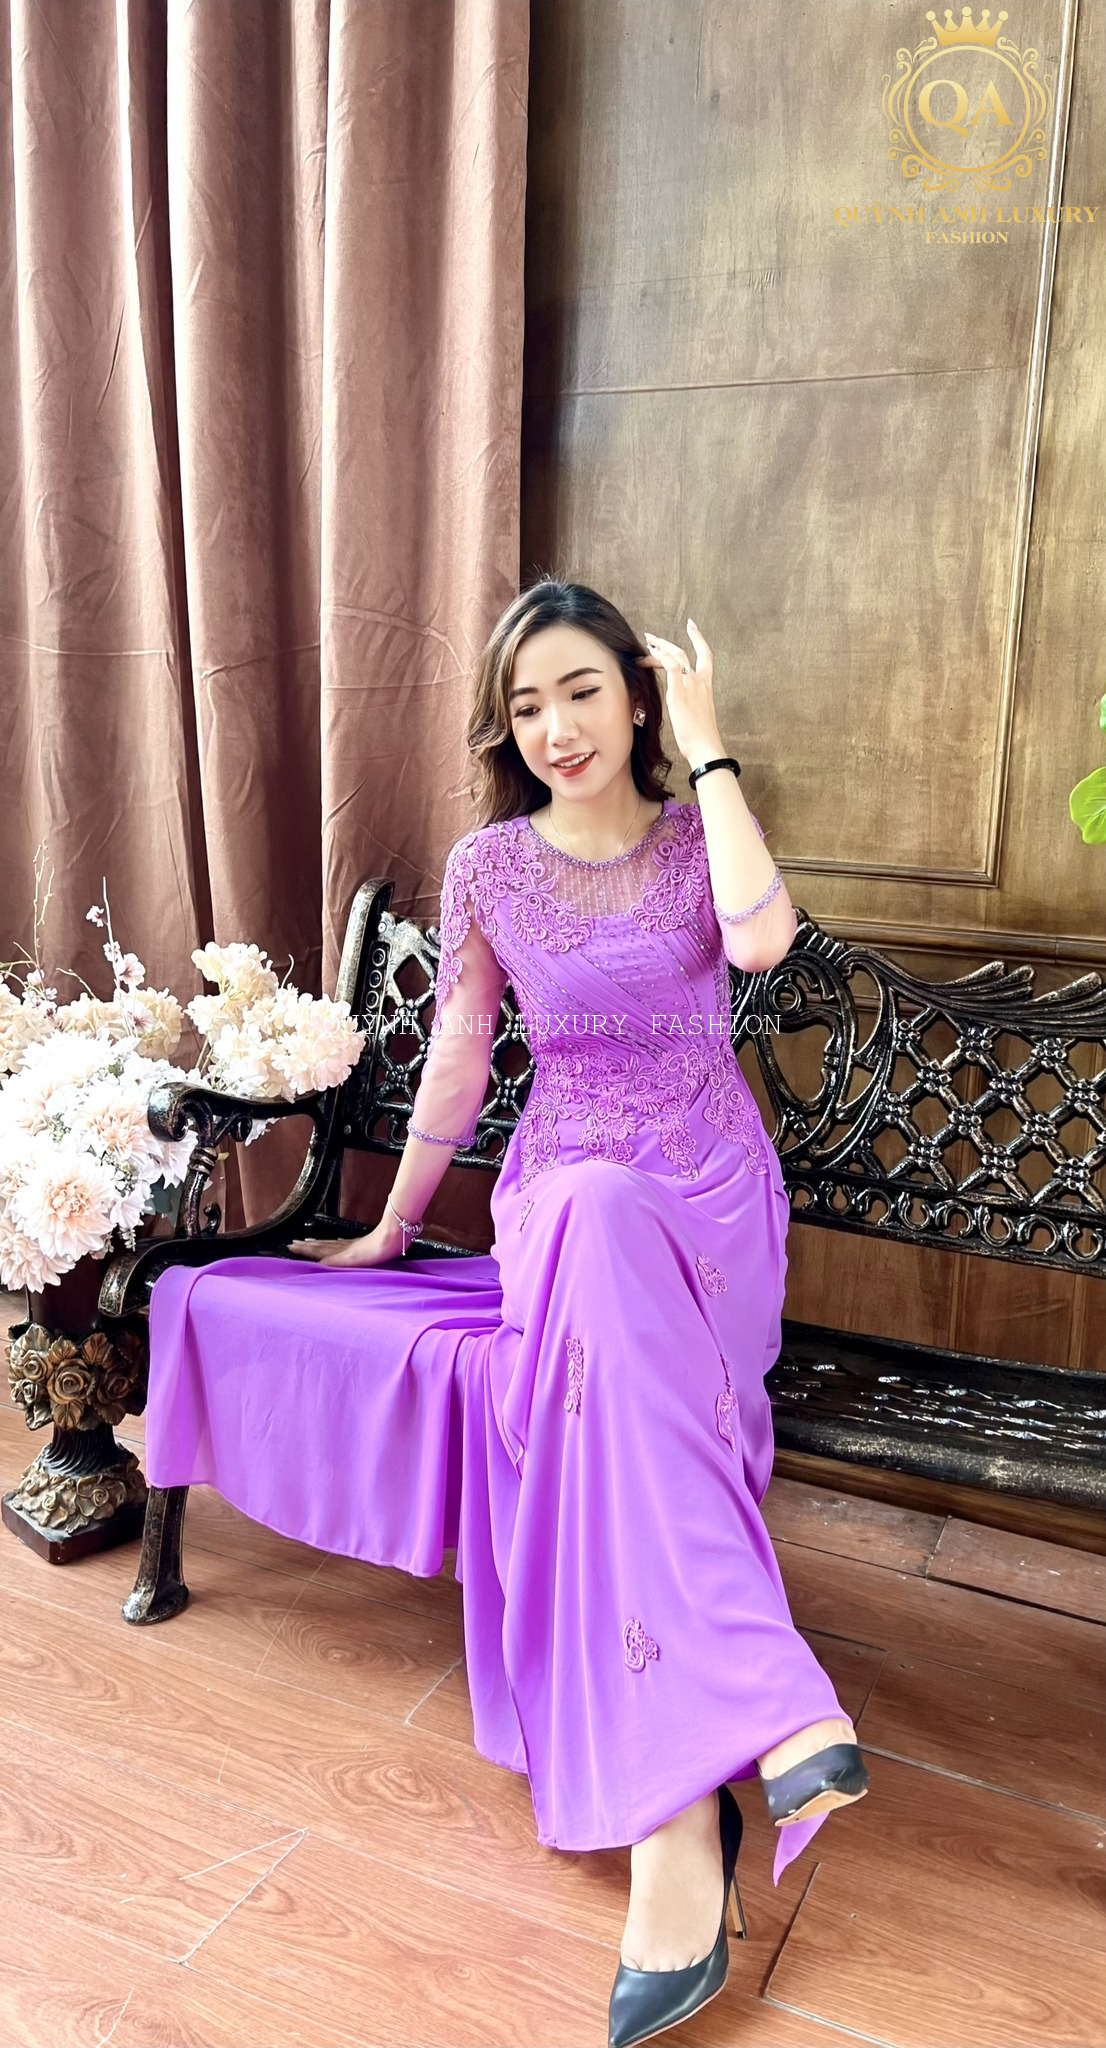 Chất lượng "miễn chê" của áo dài bà sui của Quỳnh Anh Luxury Fashion